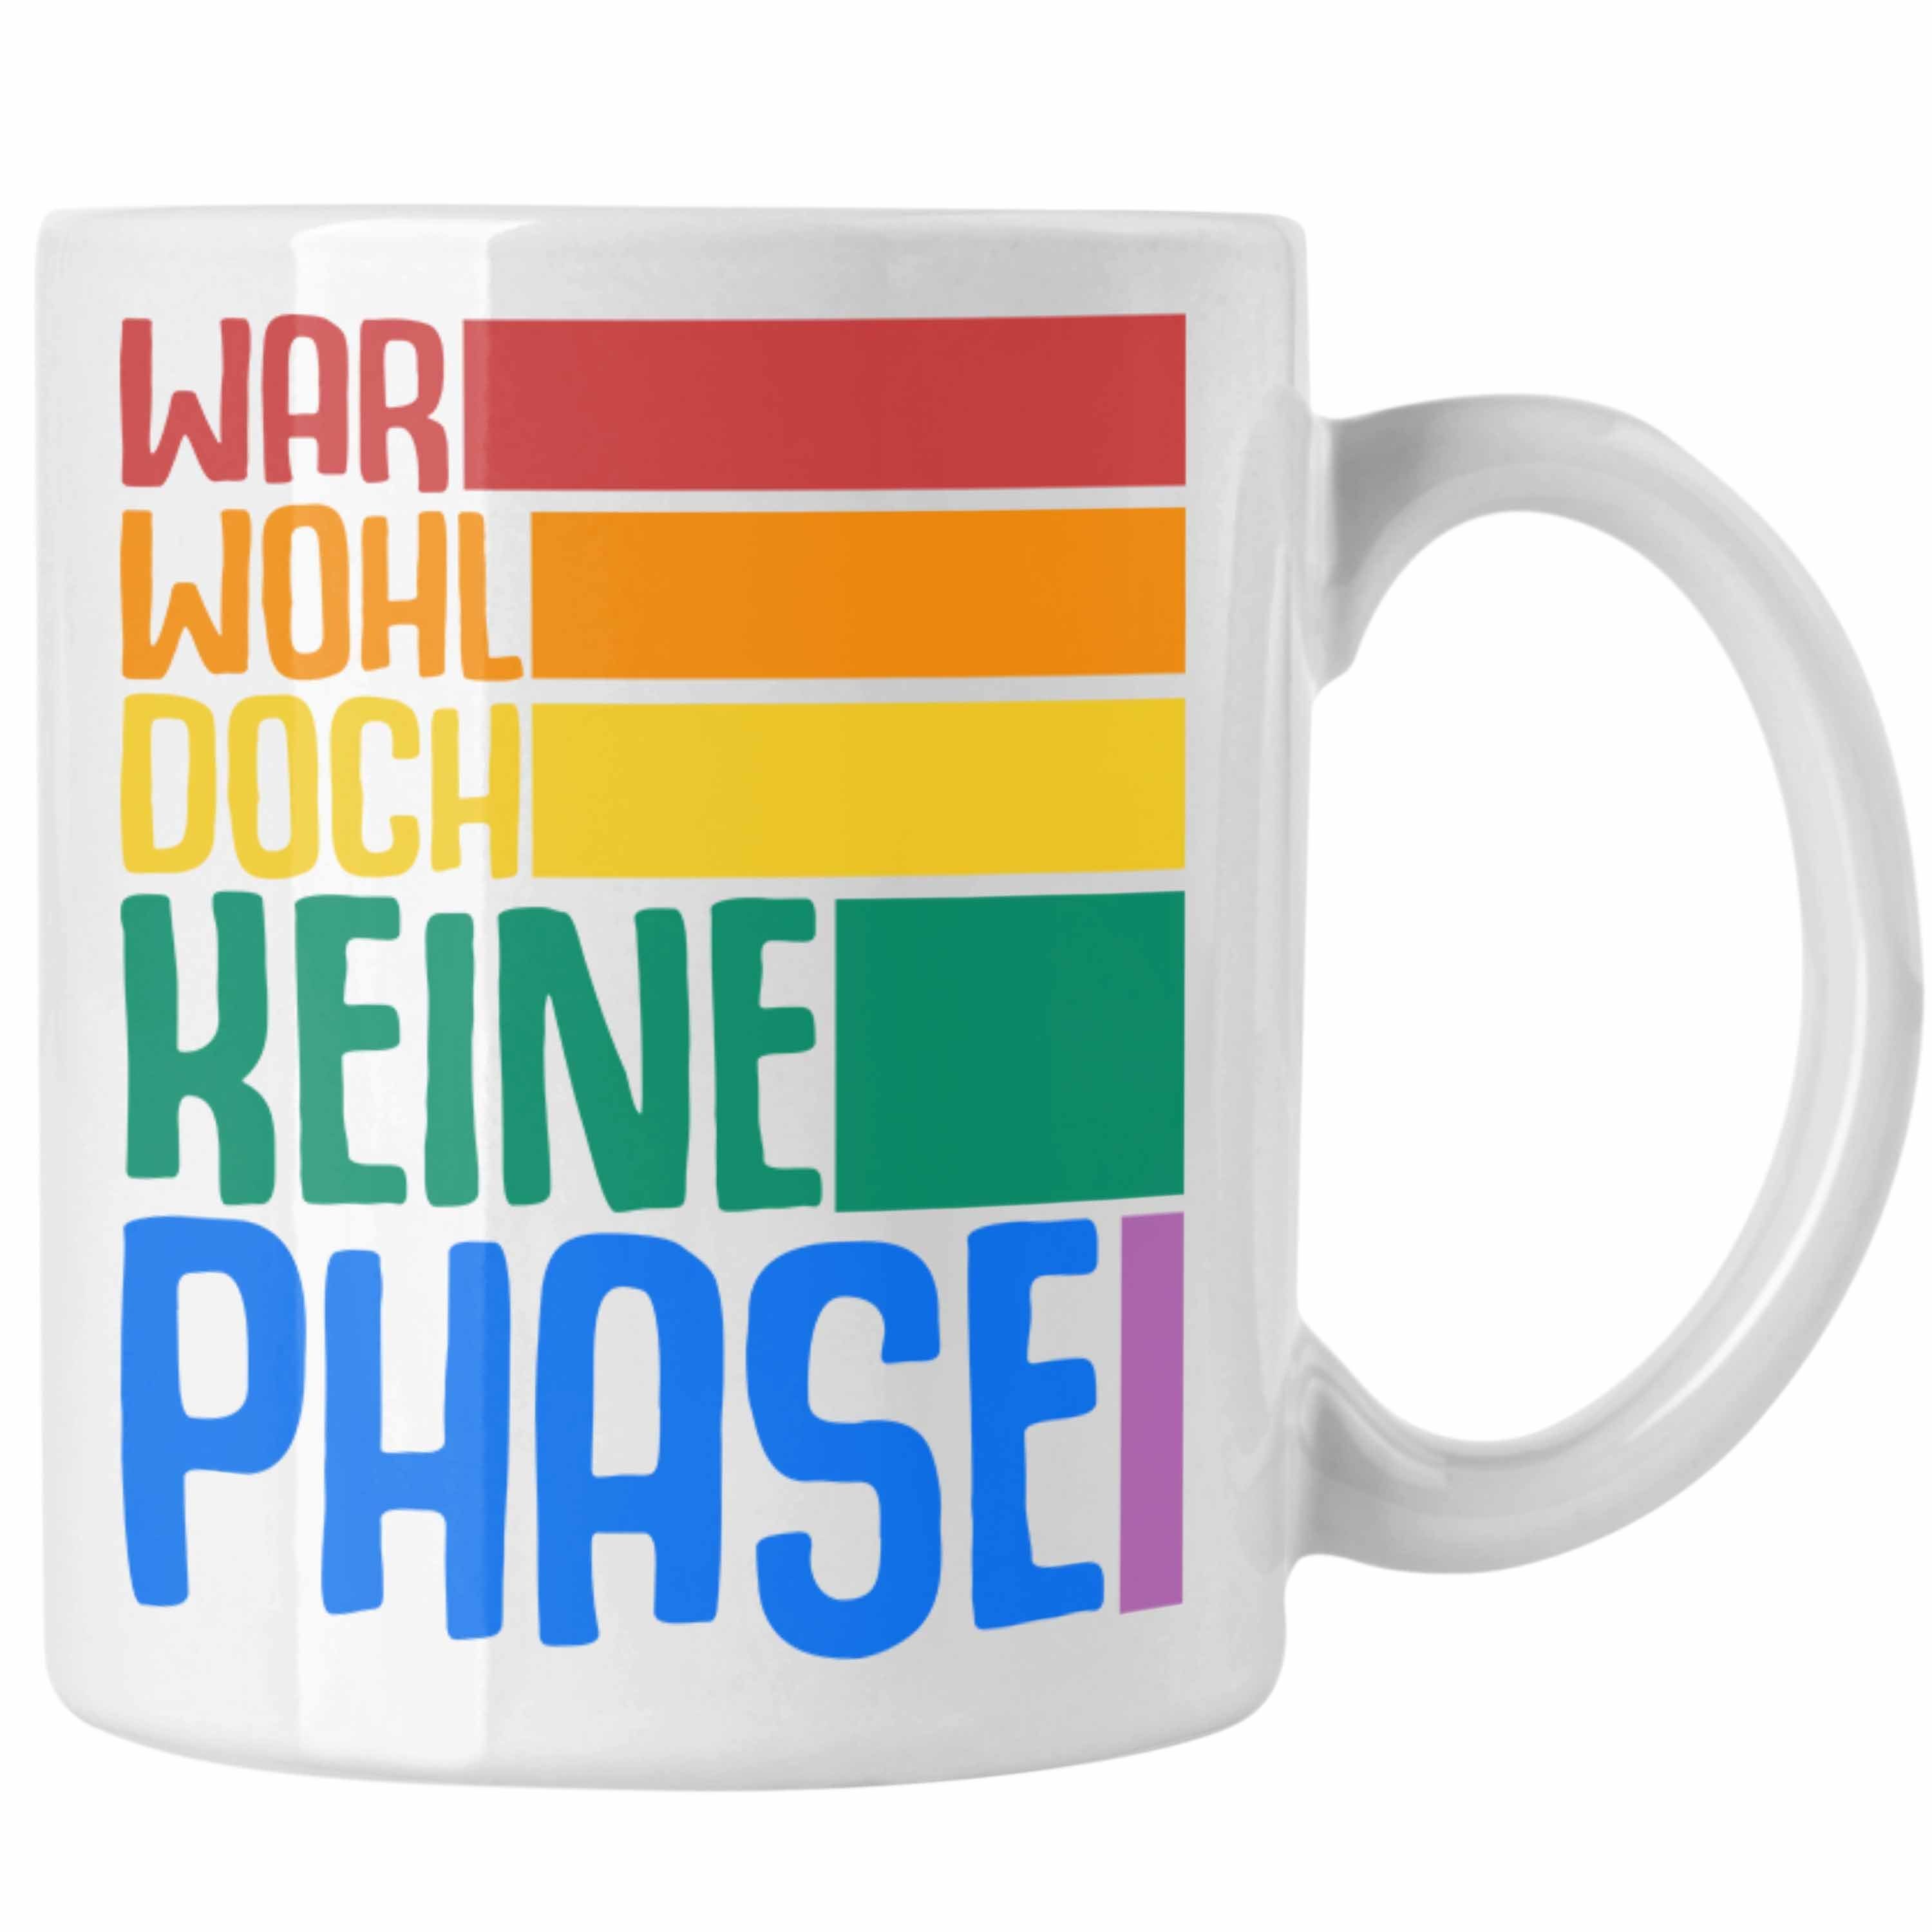 Trendation Tasse Trendation - LGBT Tasse Geschenk für Schwule Lesben Transgender Regenbogen Lustige Grafik Regenbogen War Wohl Doch Keine Phase Weiss